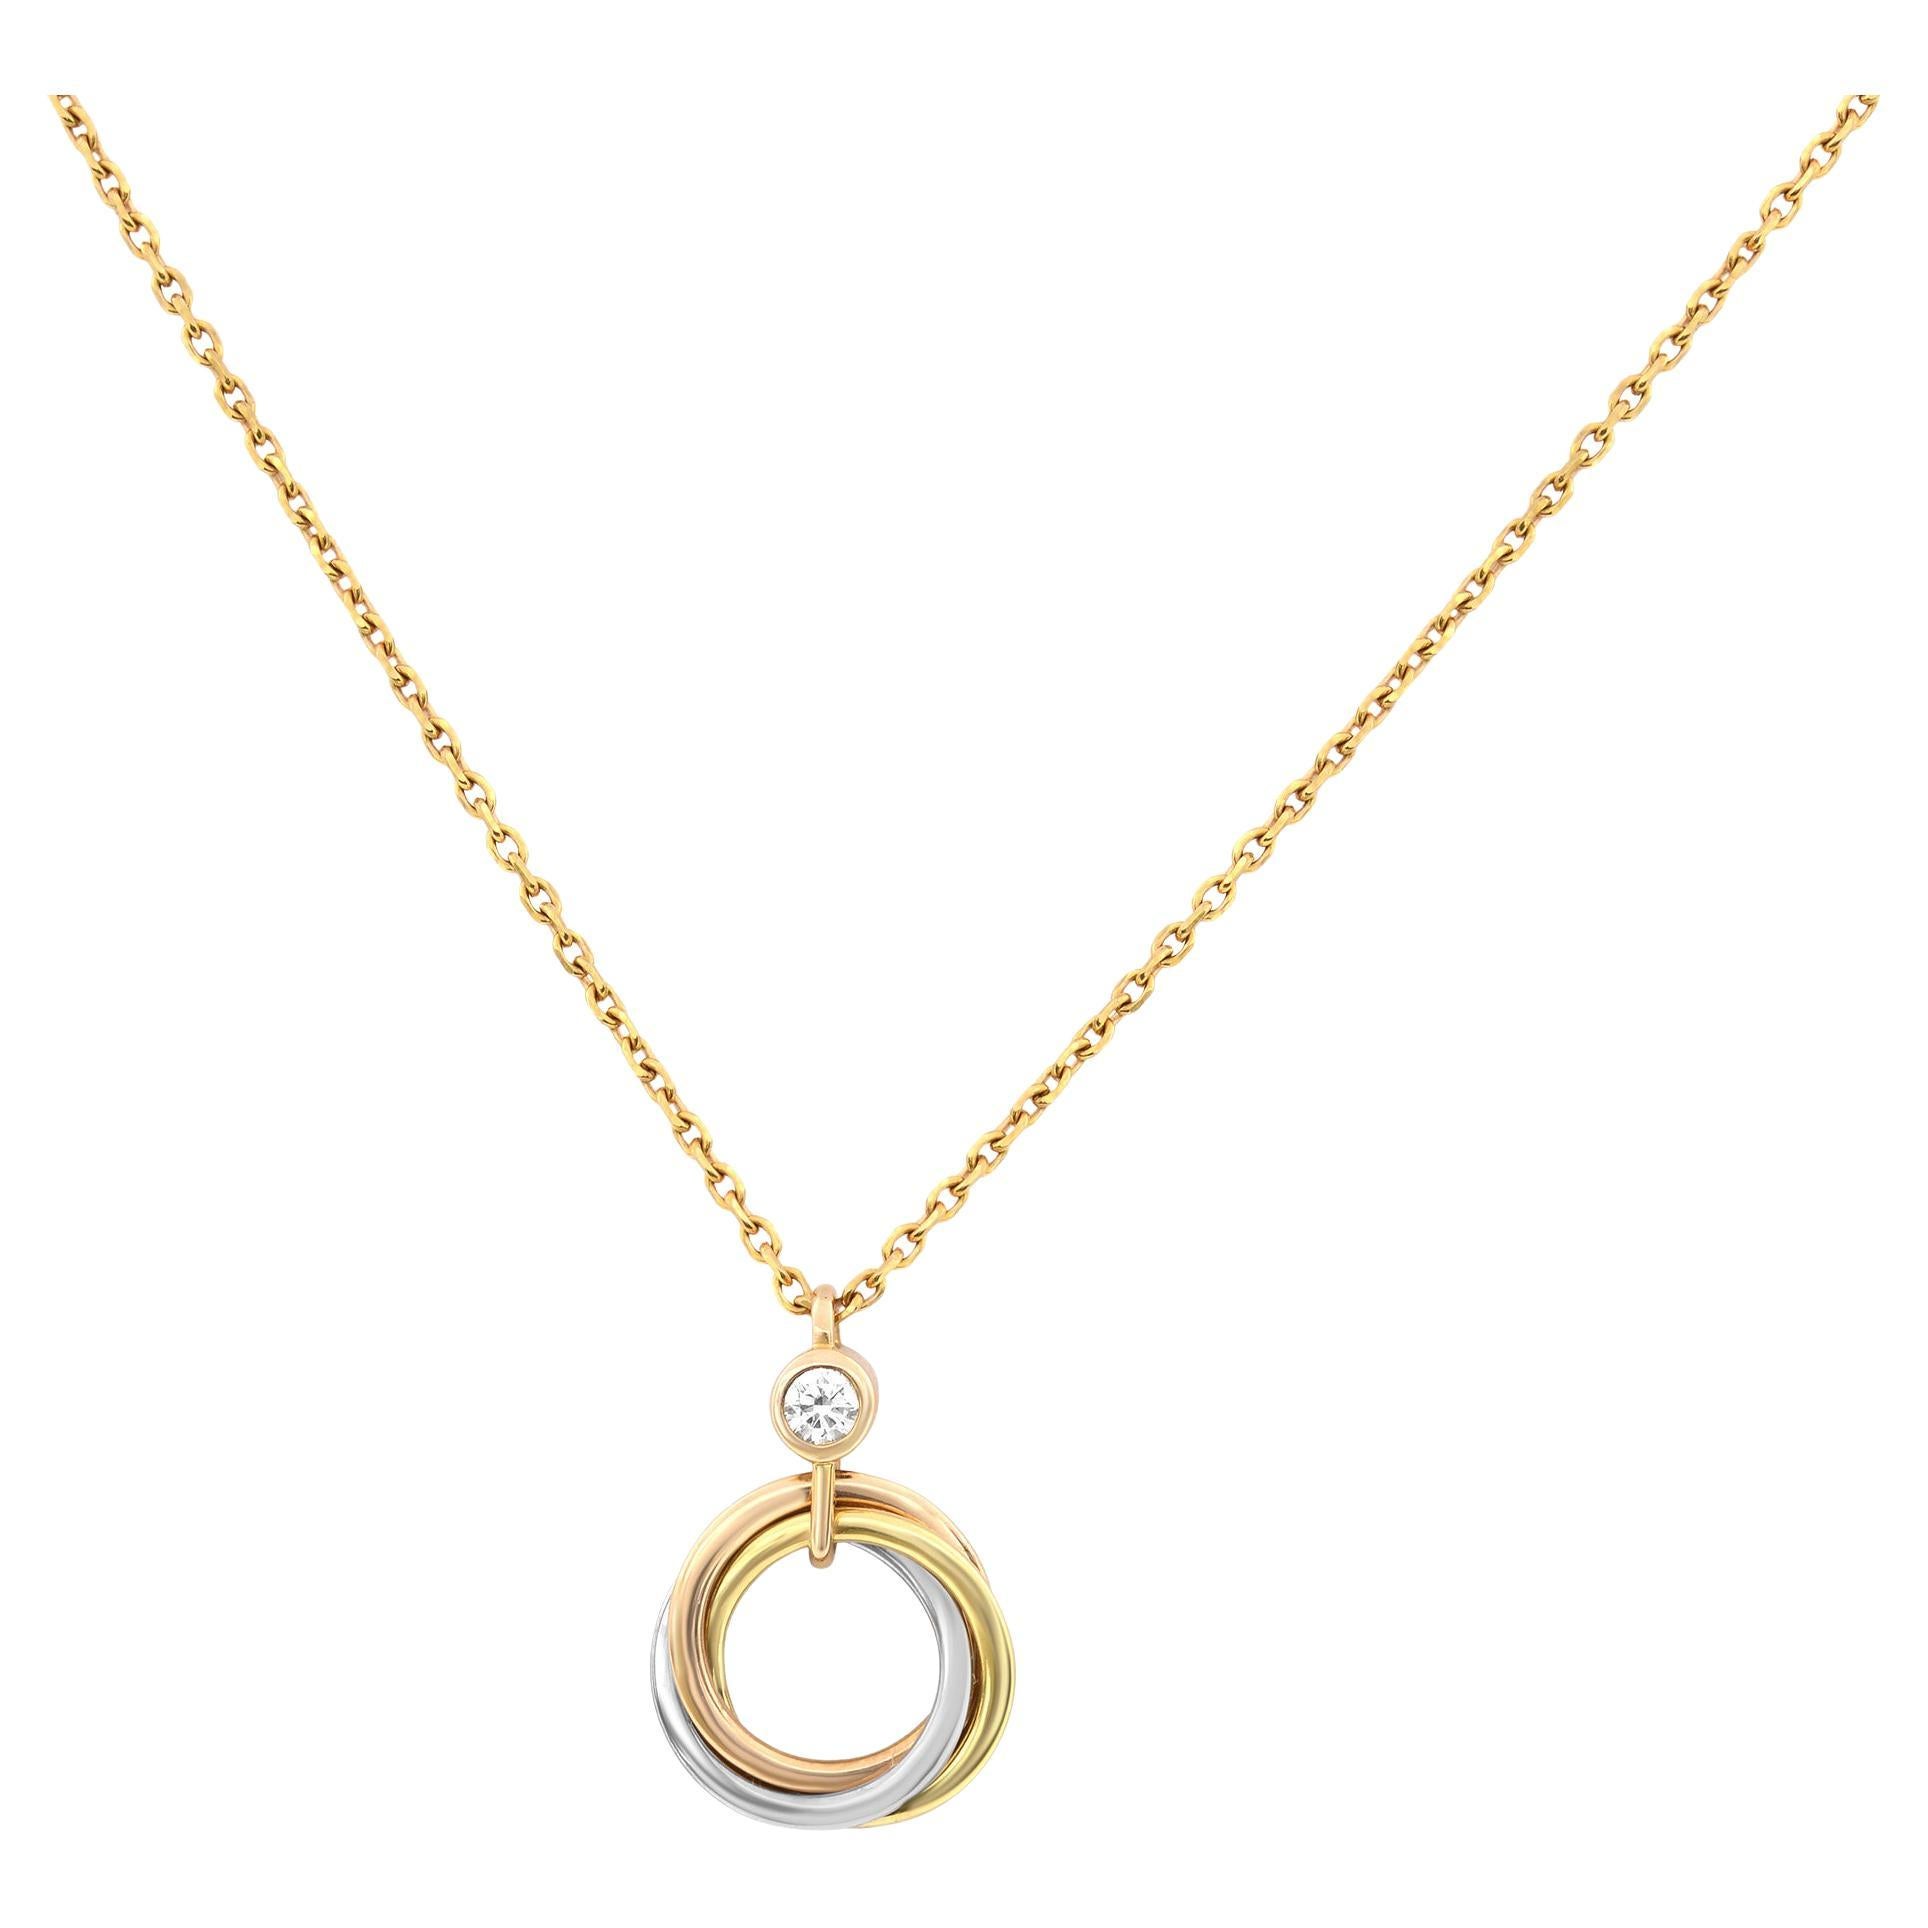 Cartier Trinity Diamond Pendant Necklace 18K Tricolor Gold 0.04cttw